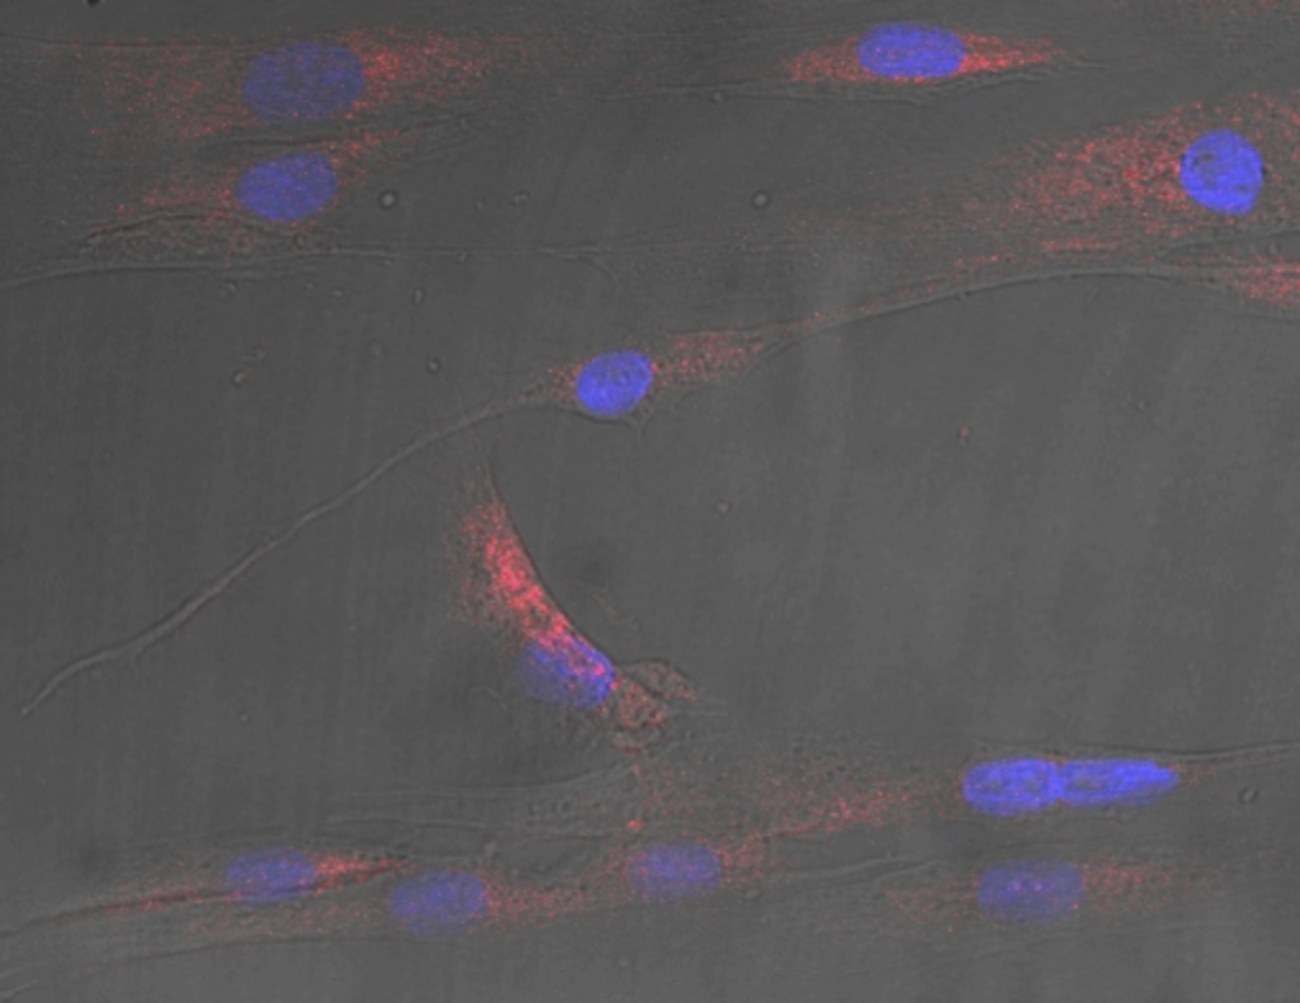 Mikroskopische Aufnahme menschlicher Muskelzellen mit Zellkernen (blau) und Stress, verursacht durch Ceramid-Signale (rot).